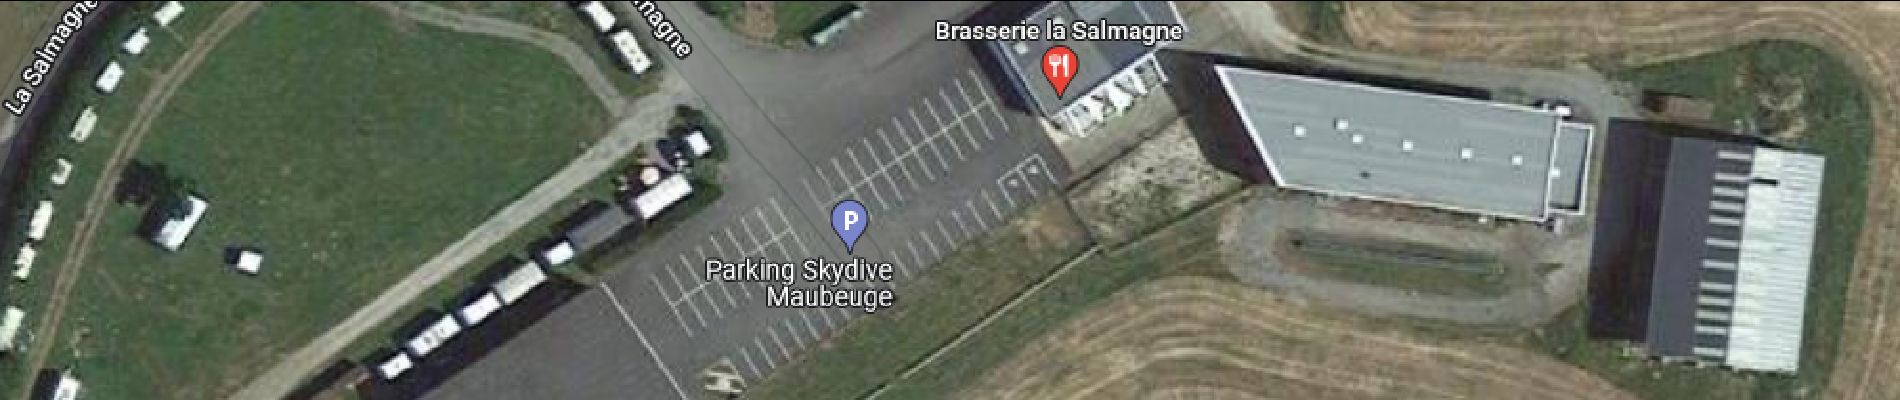 Punto di interesse Vieux-Reng - Brasserie de l'aérodrome de la Salmagne - Photo